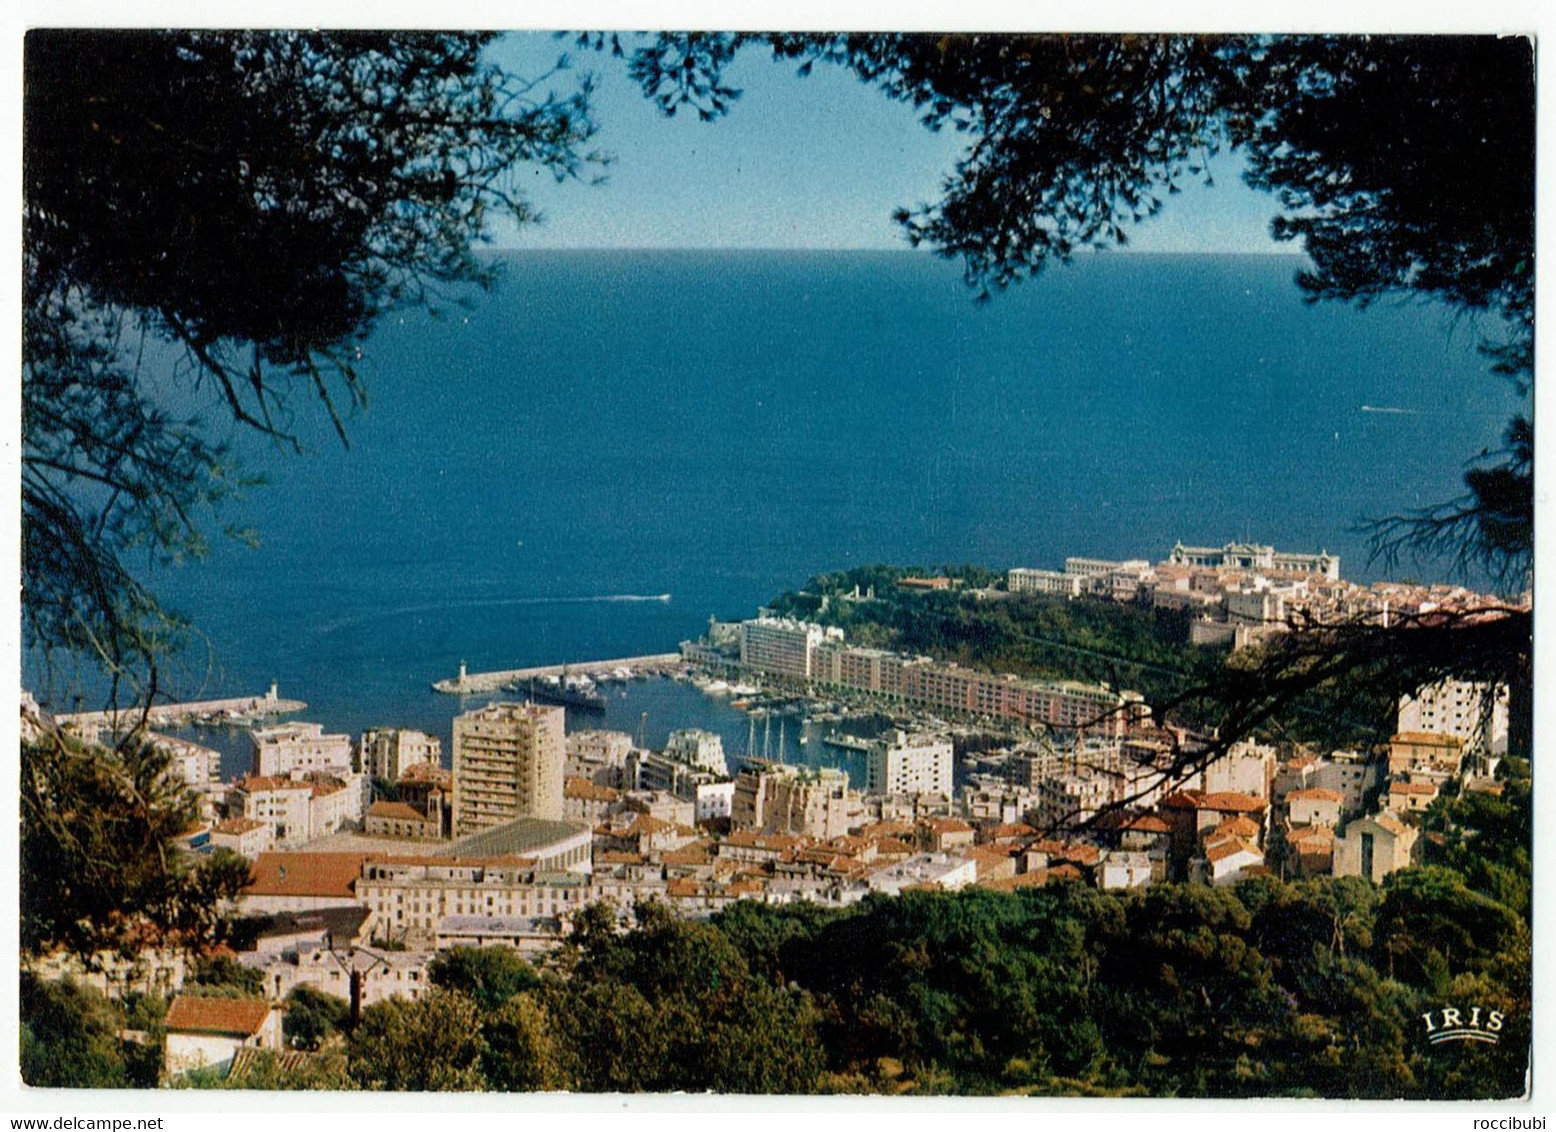 Monaco, Monte Carlo, Cote D Azur - Monte-Carlo